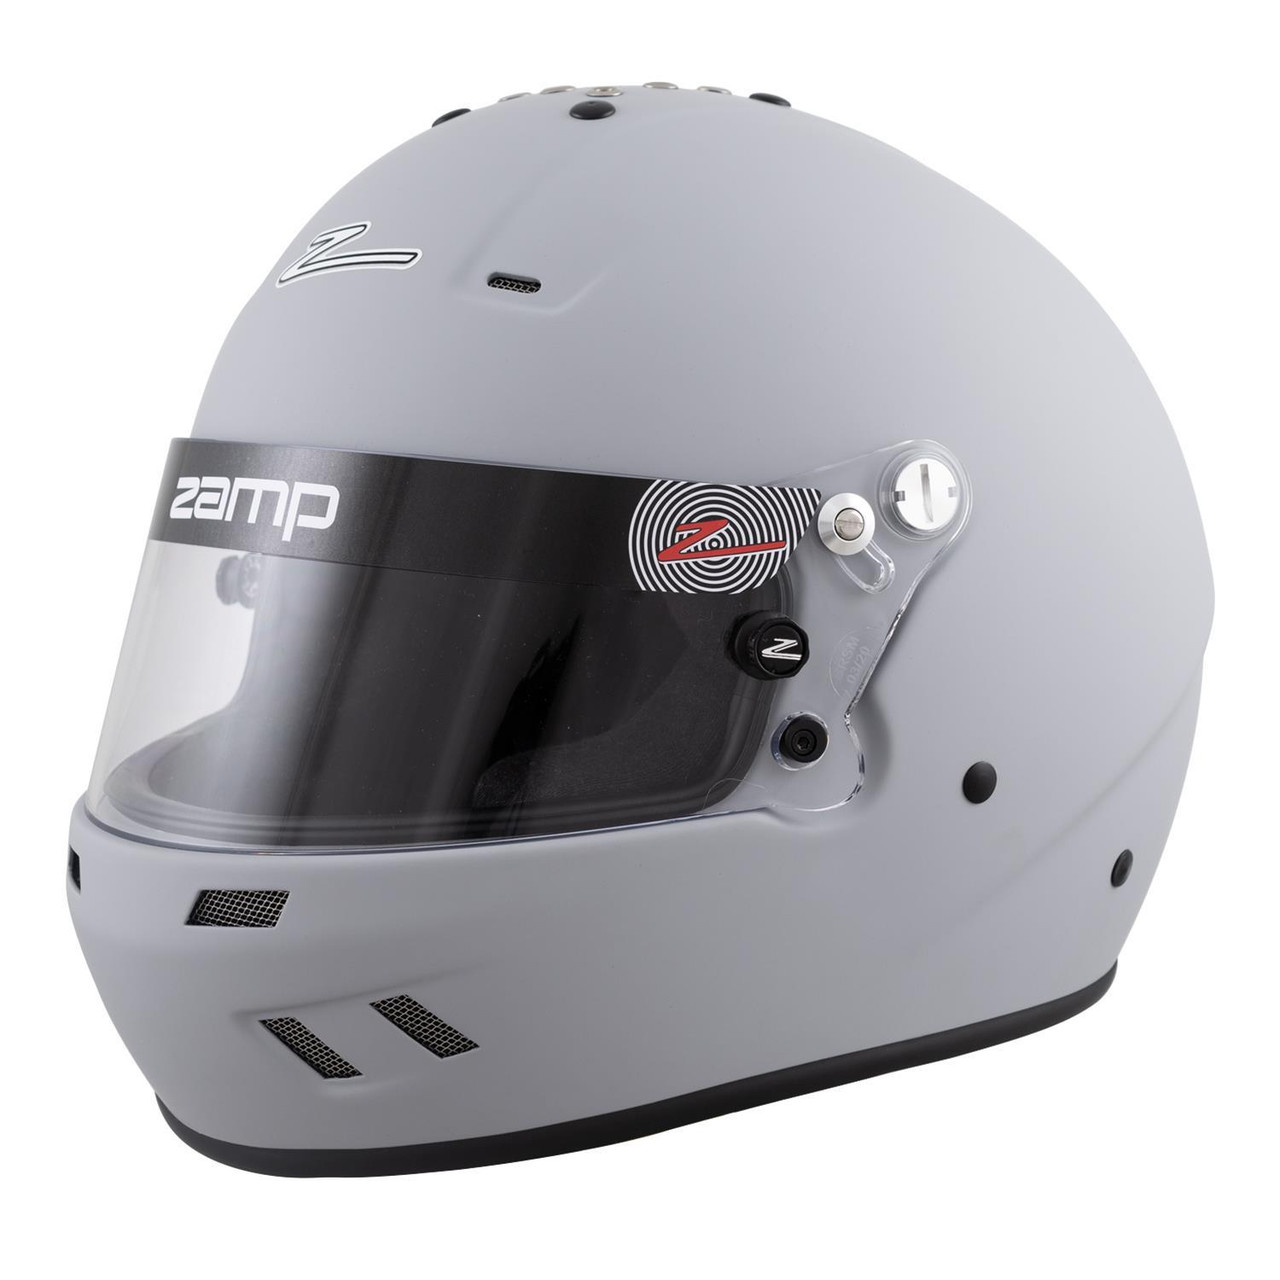 Zamp Helmet RZ-59 XL Matte Gray SA2020 - ZAMH77215FXL